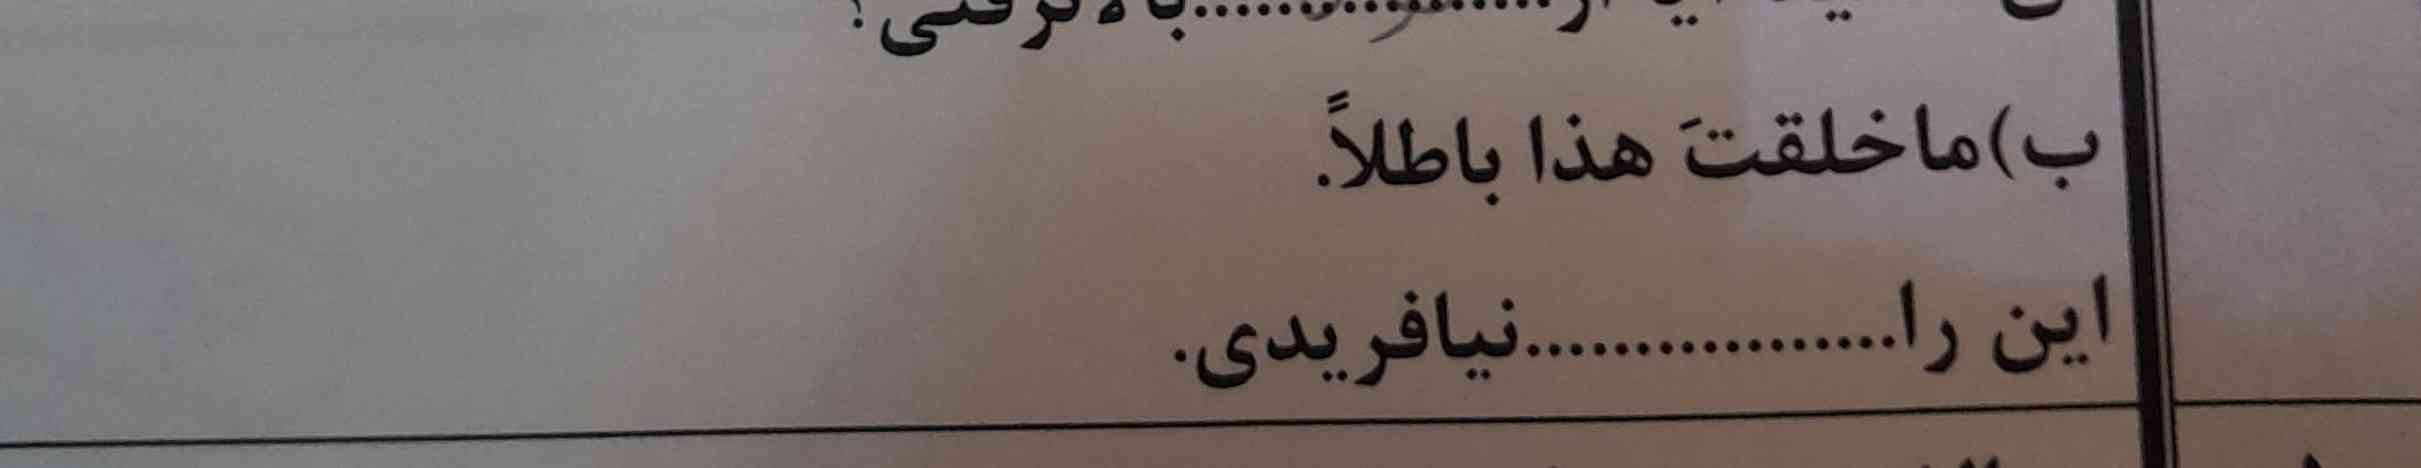 درس عربی فصل هفتم
